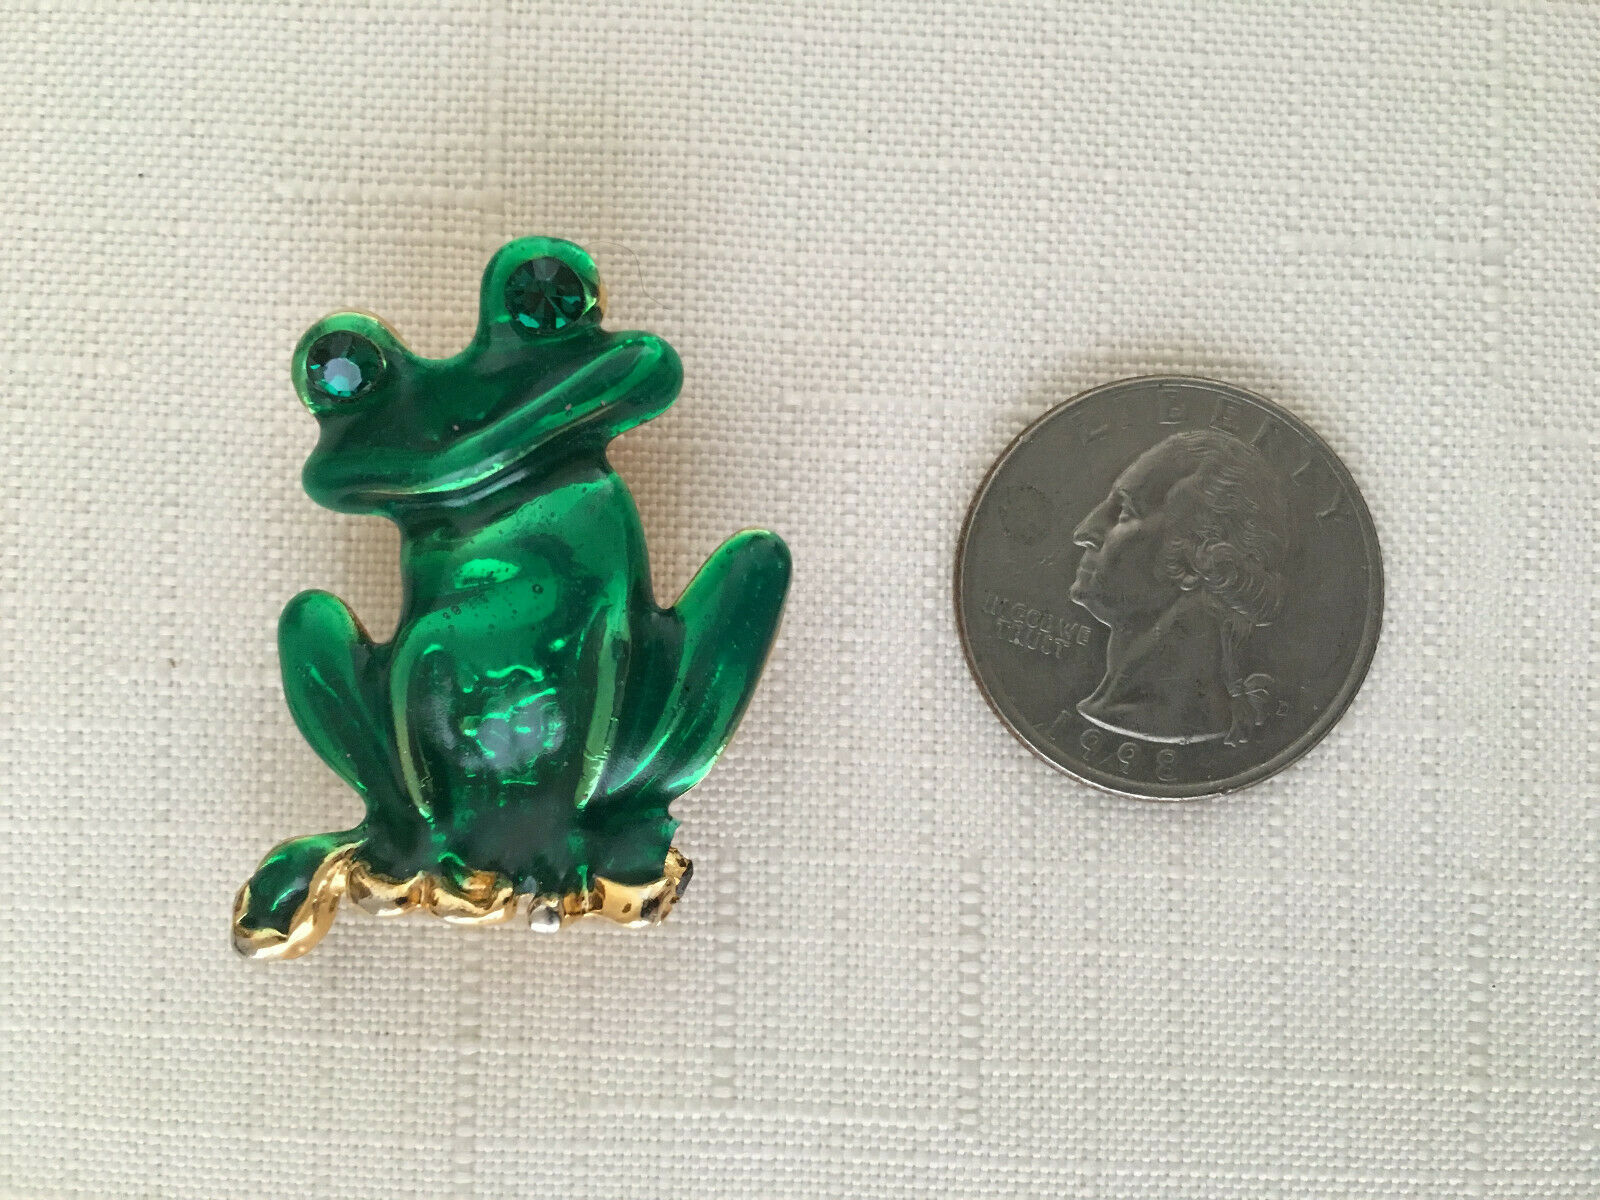 Frog Pin With Rhinestone Eyes - Green Enamel & Gold Tone Brooch